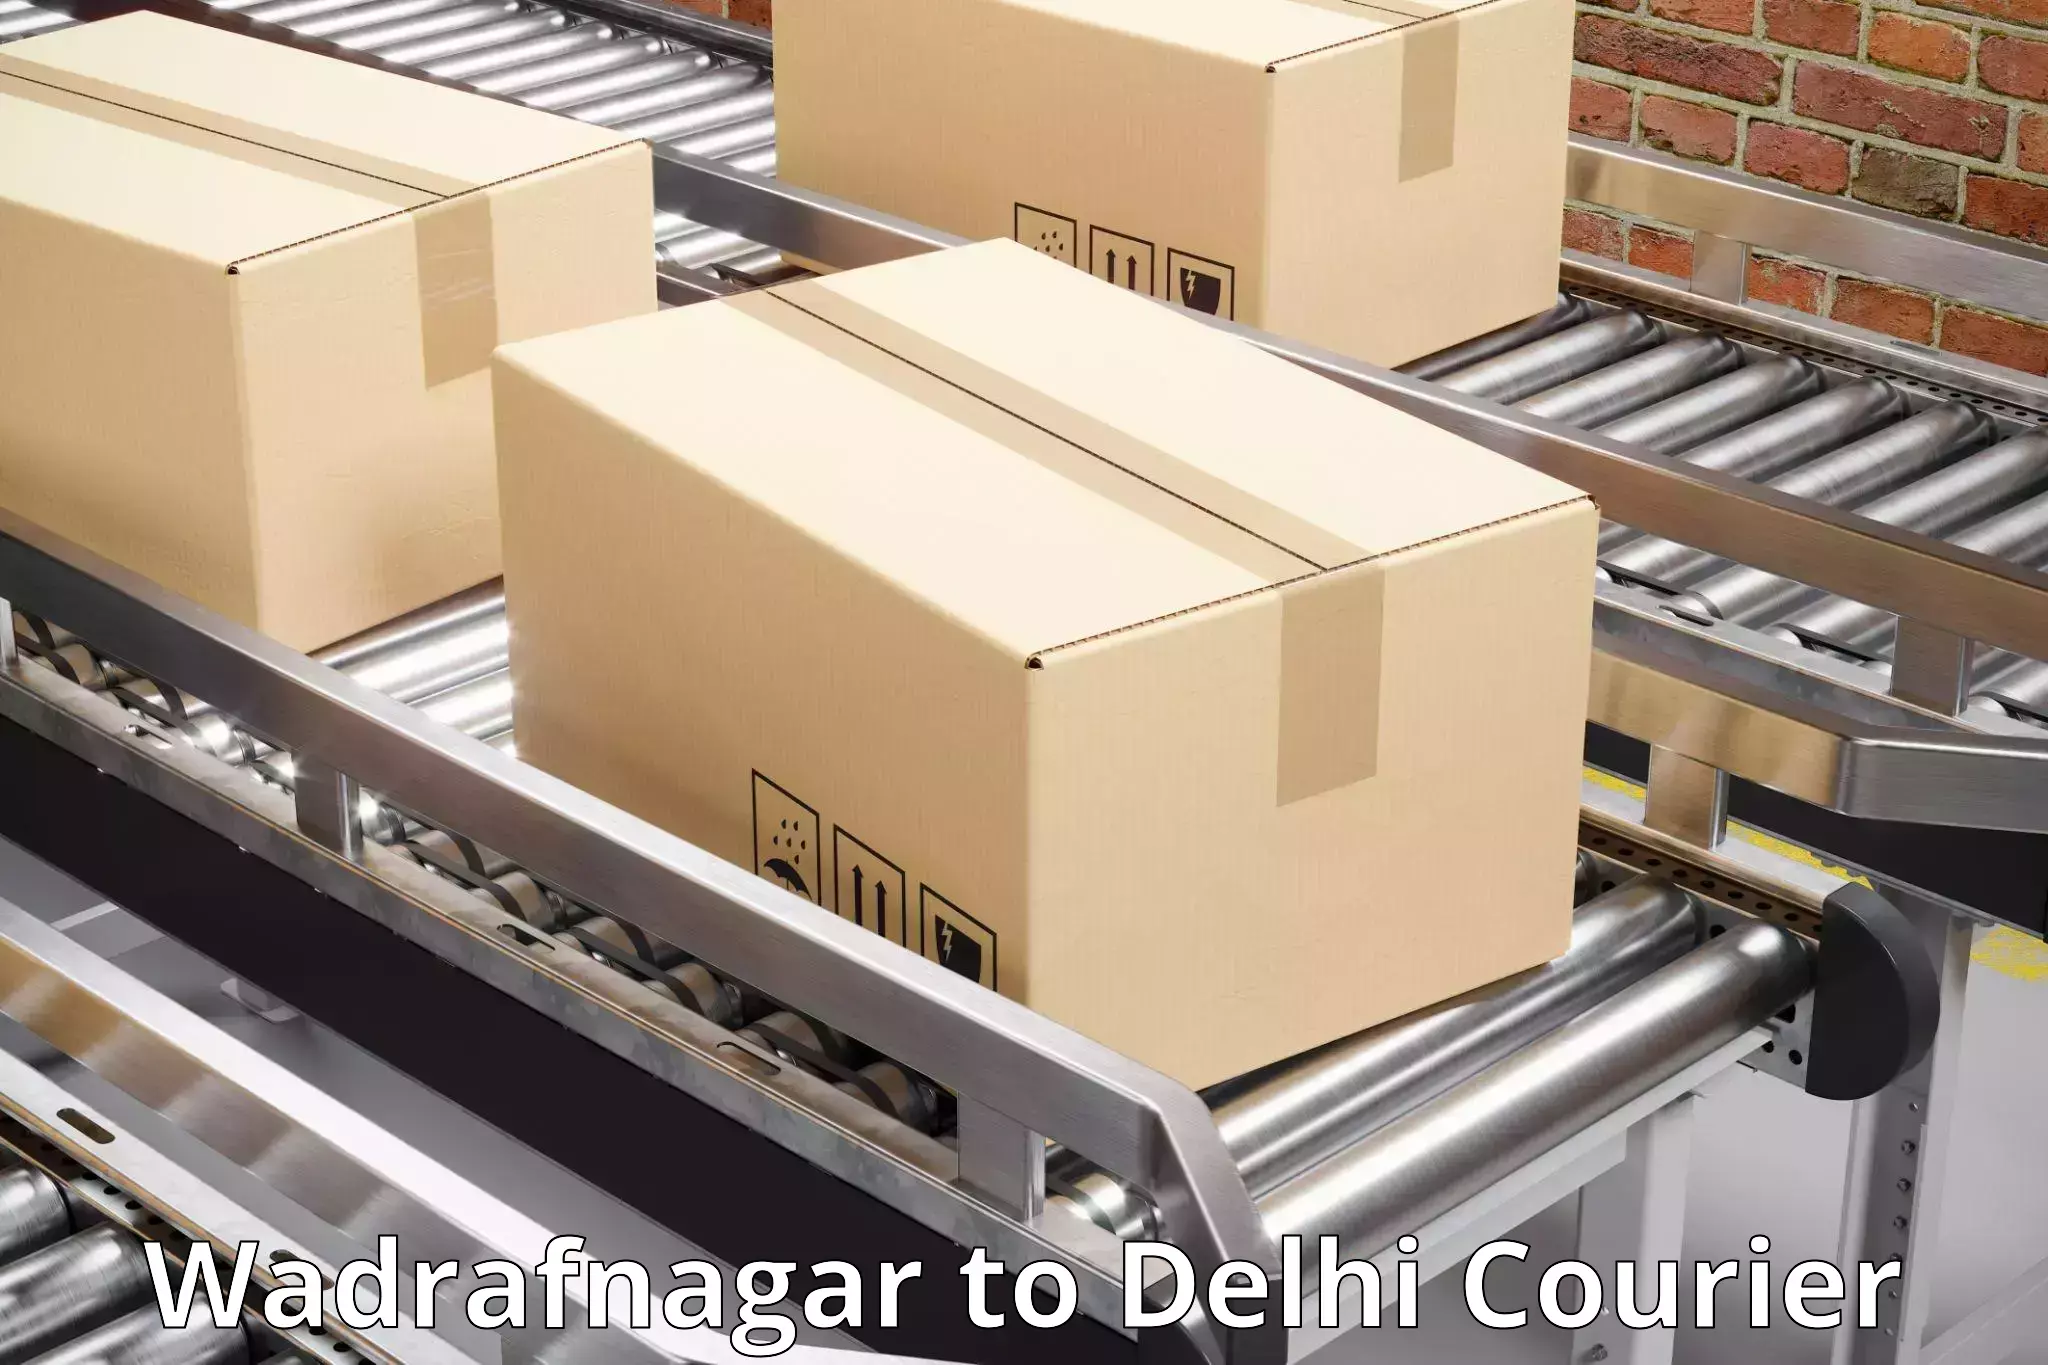 Modern parcel services Wadrafnagar to Kalkaji